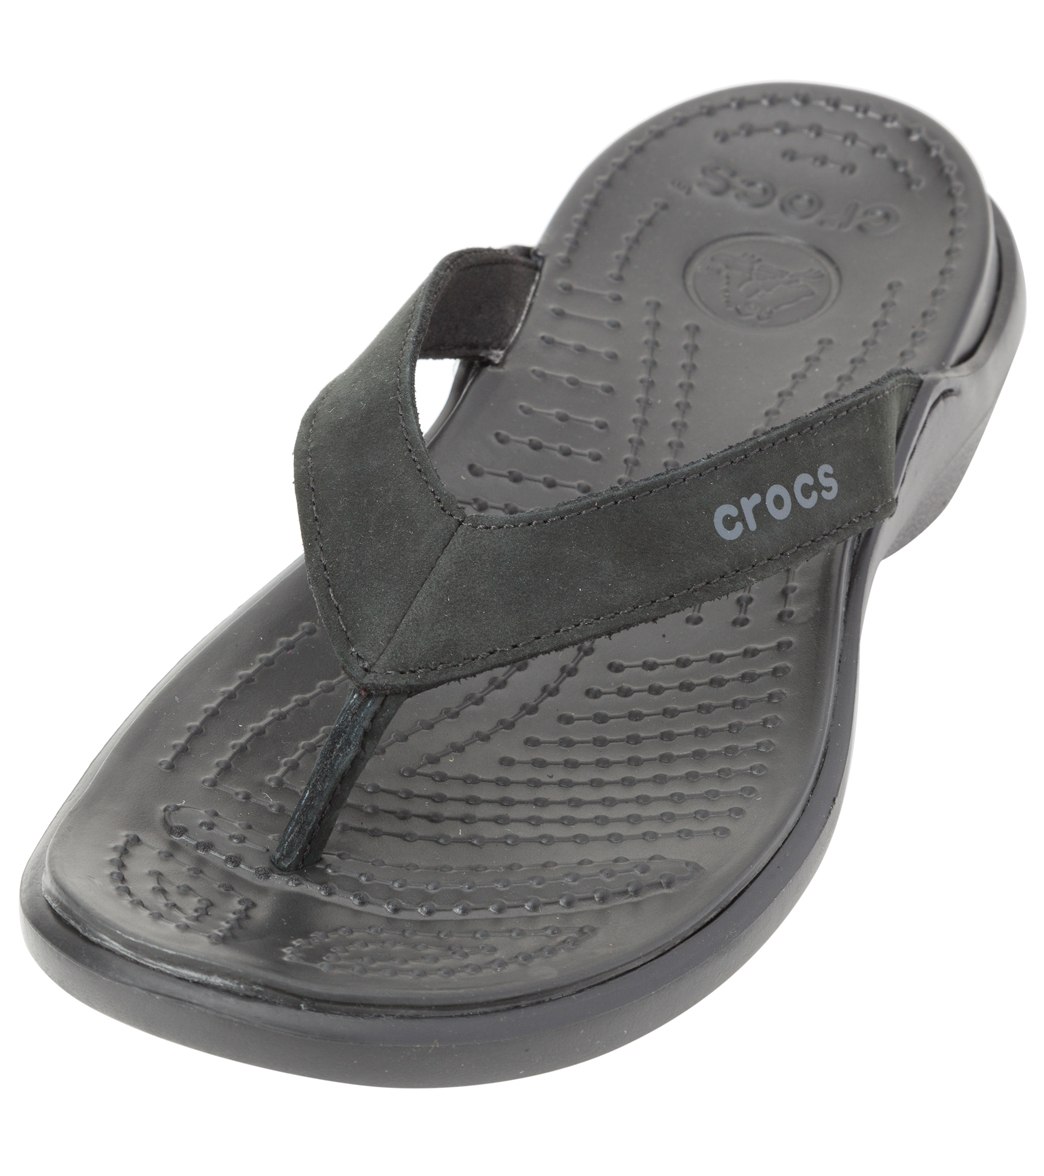 Buy > croc capri iv flip flops > in stock